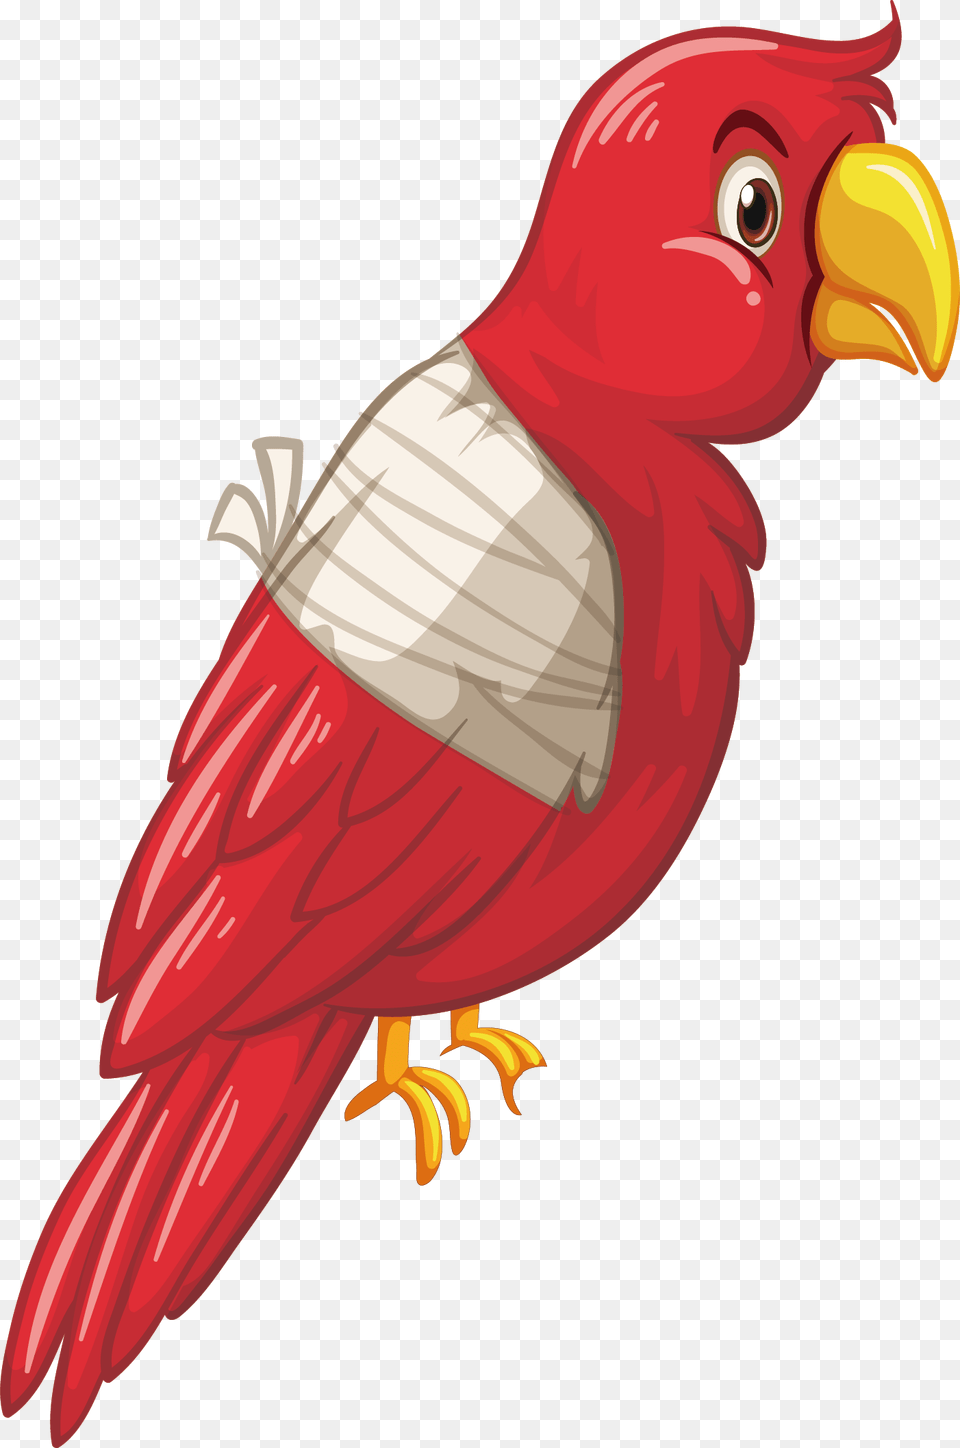 X 2114 6 Injured Bird Cartoon, Animal, Beak, Food, Ketchup Free Png Download